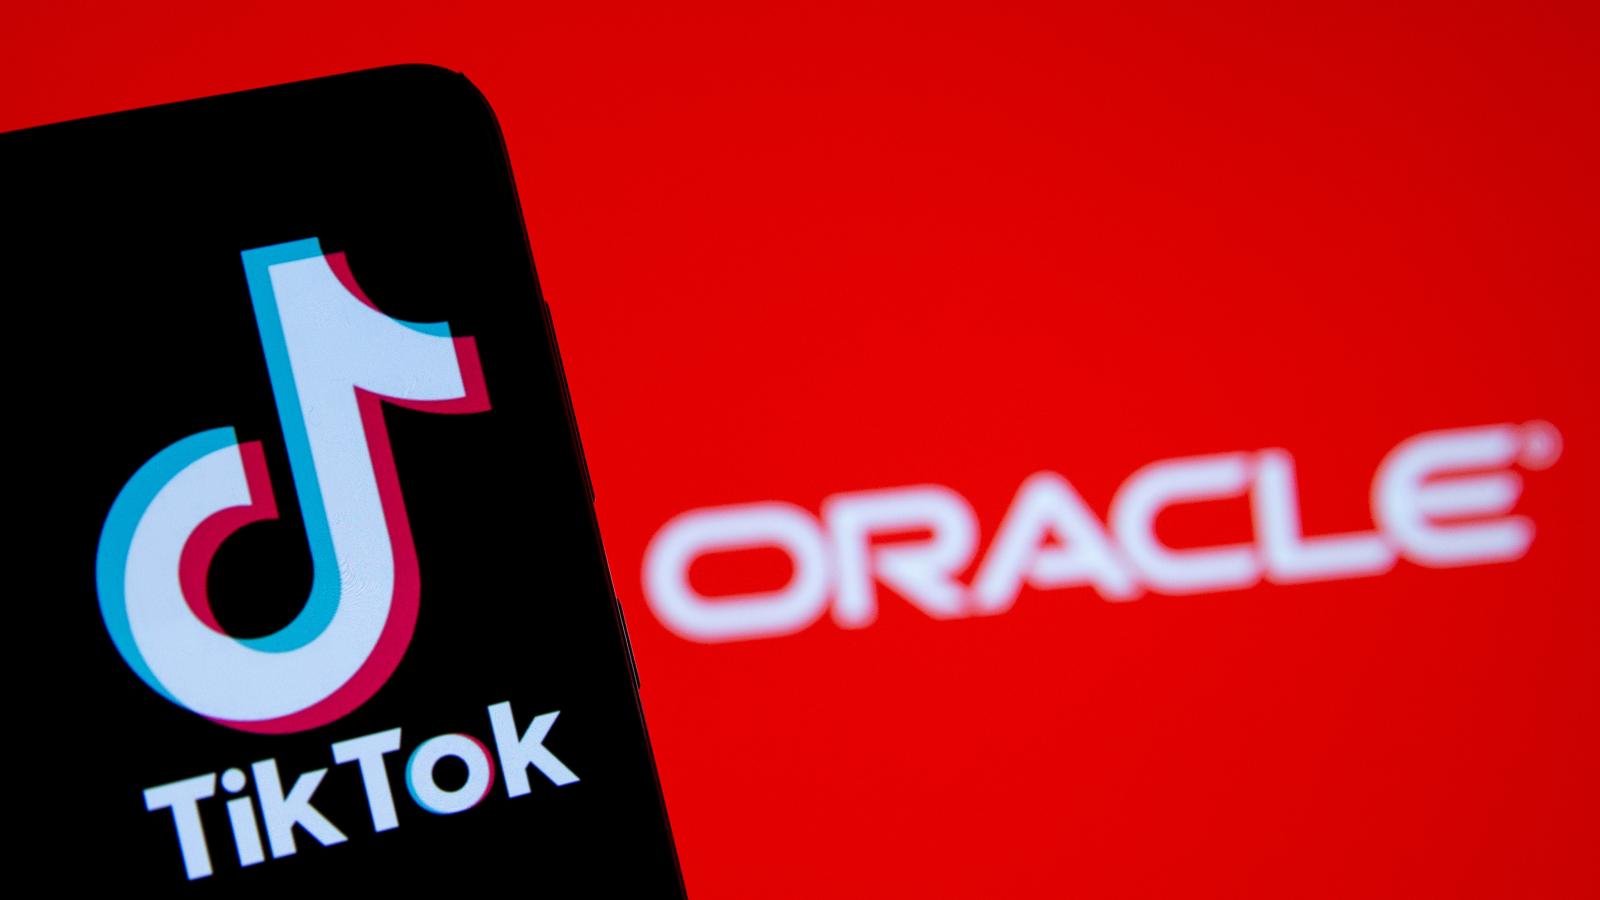 Oracle Takes Over TikTok